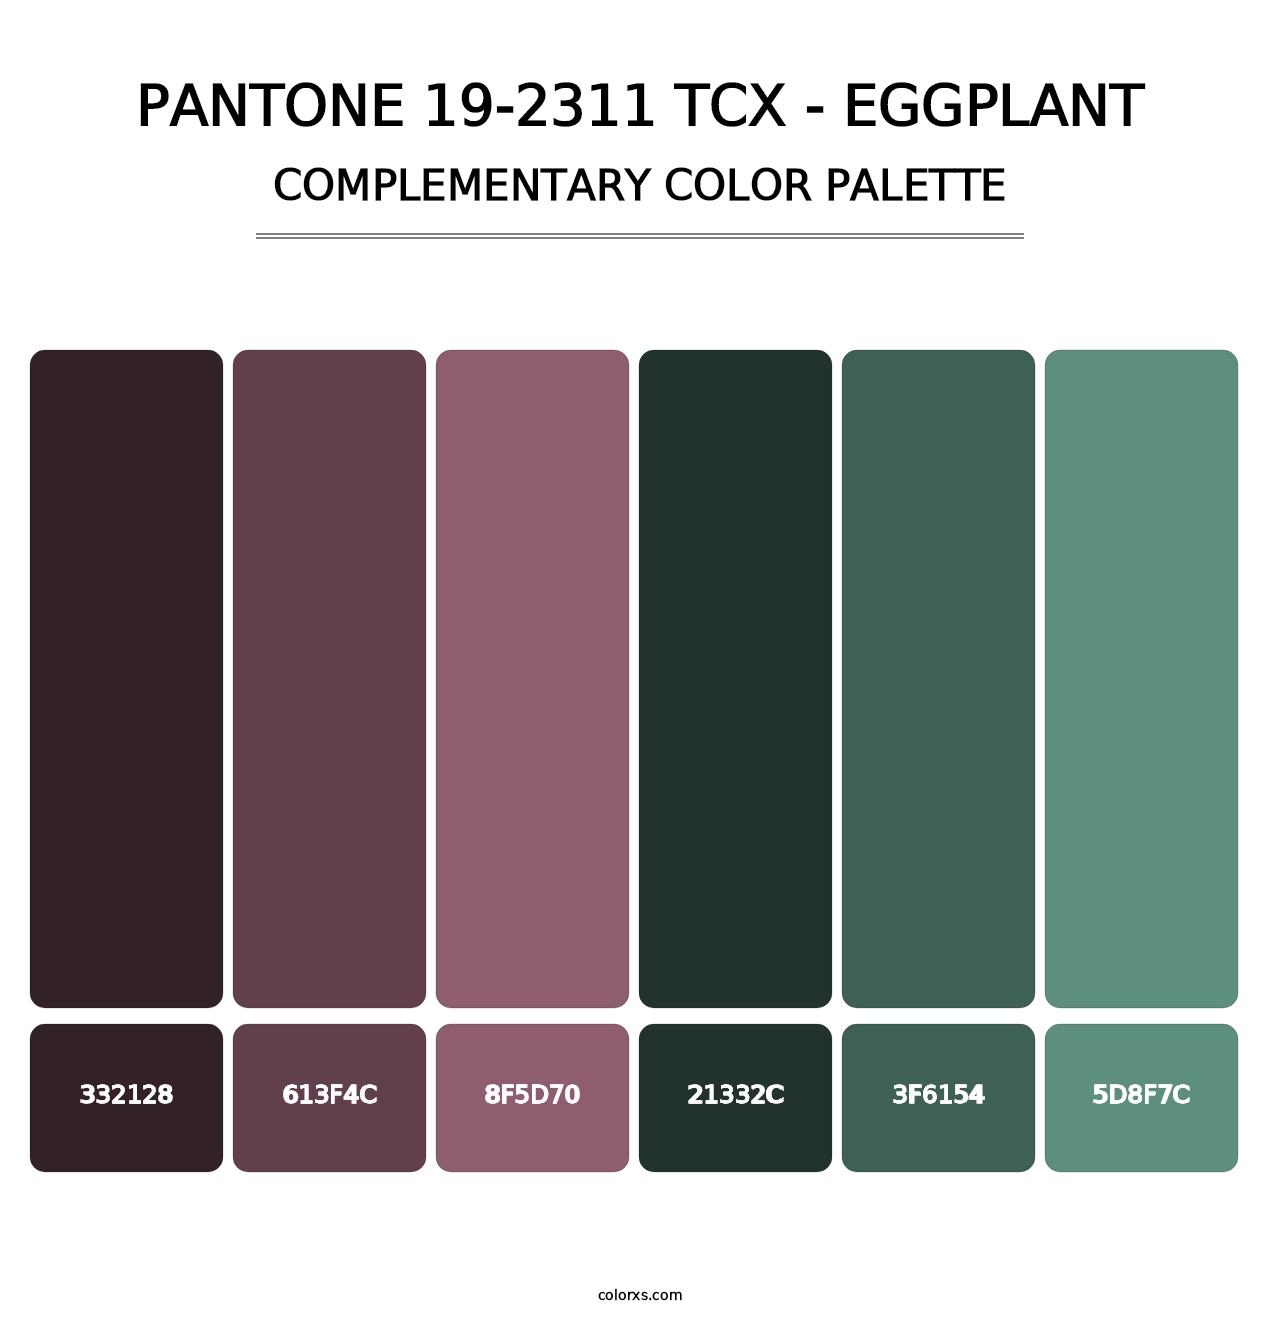 PANTONE 19-2311 TCX - Eggplant - Complementary Color Palette